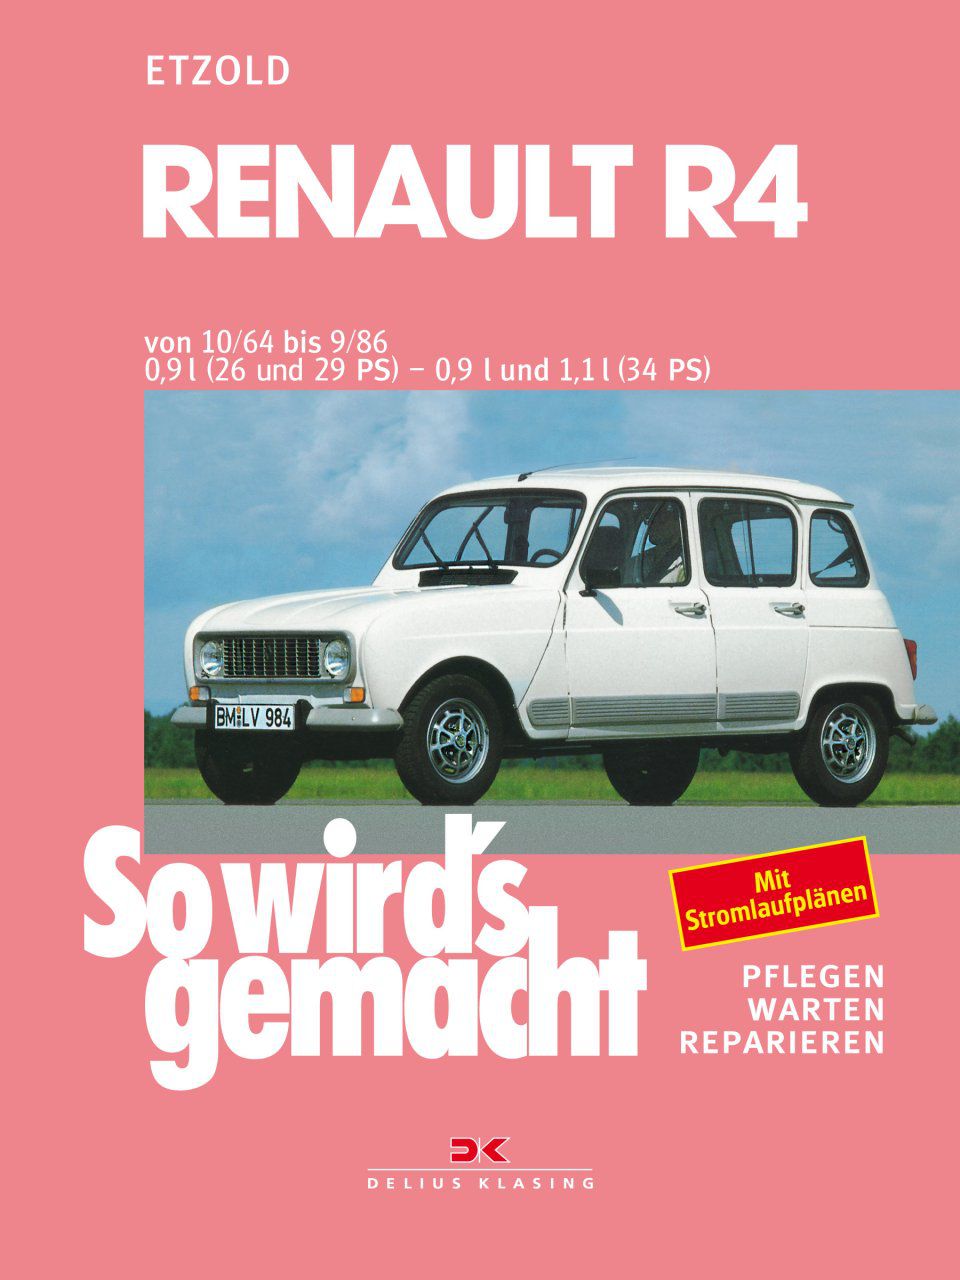 Renault R4
Renault R4
Renault R4
Renault R4